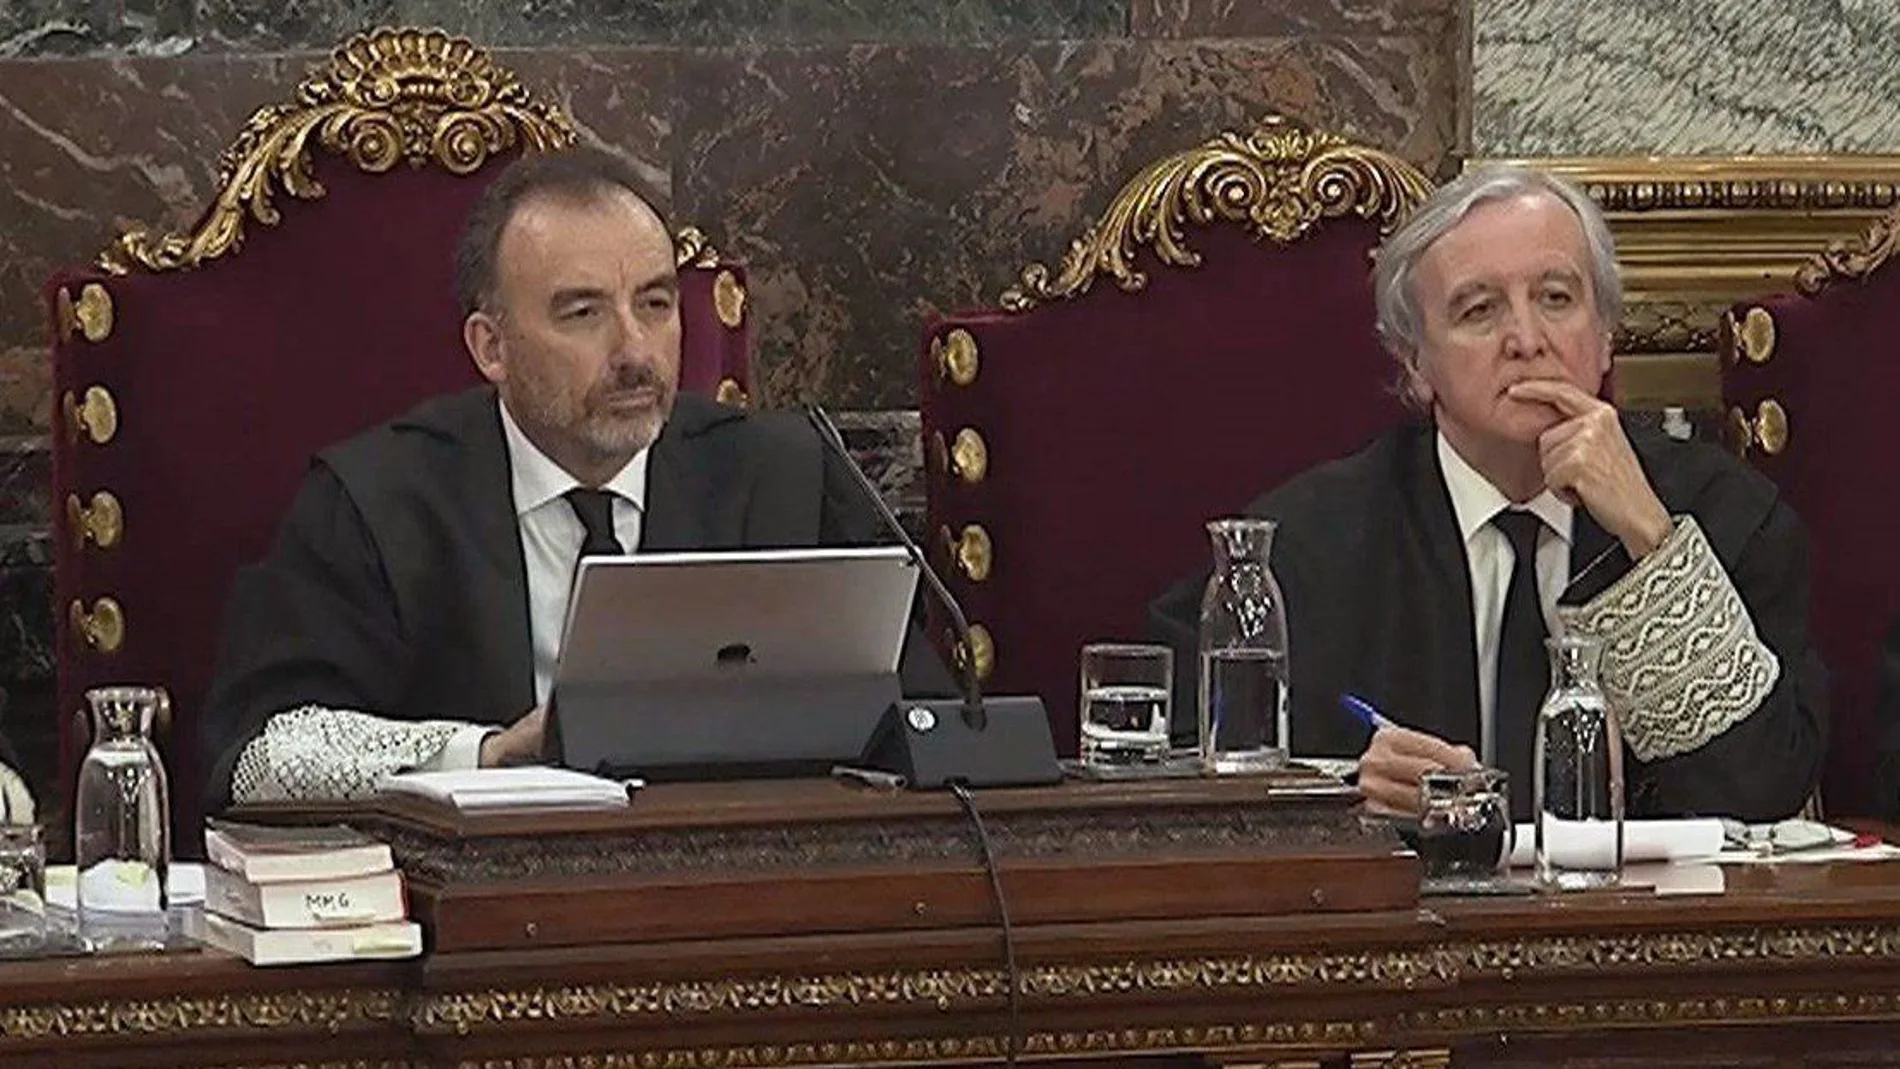 Imagen capturada de la señal institucional del Tribunal Supremo, del presidente del tribunal Manuel Marchena, junto al juez Juan Ramón Berdugo / Foto: Efe